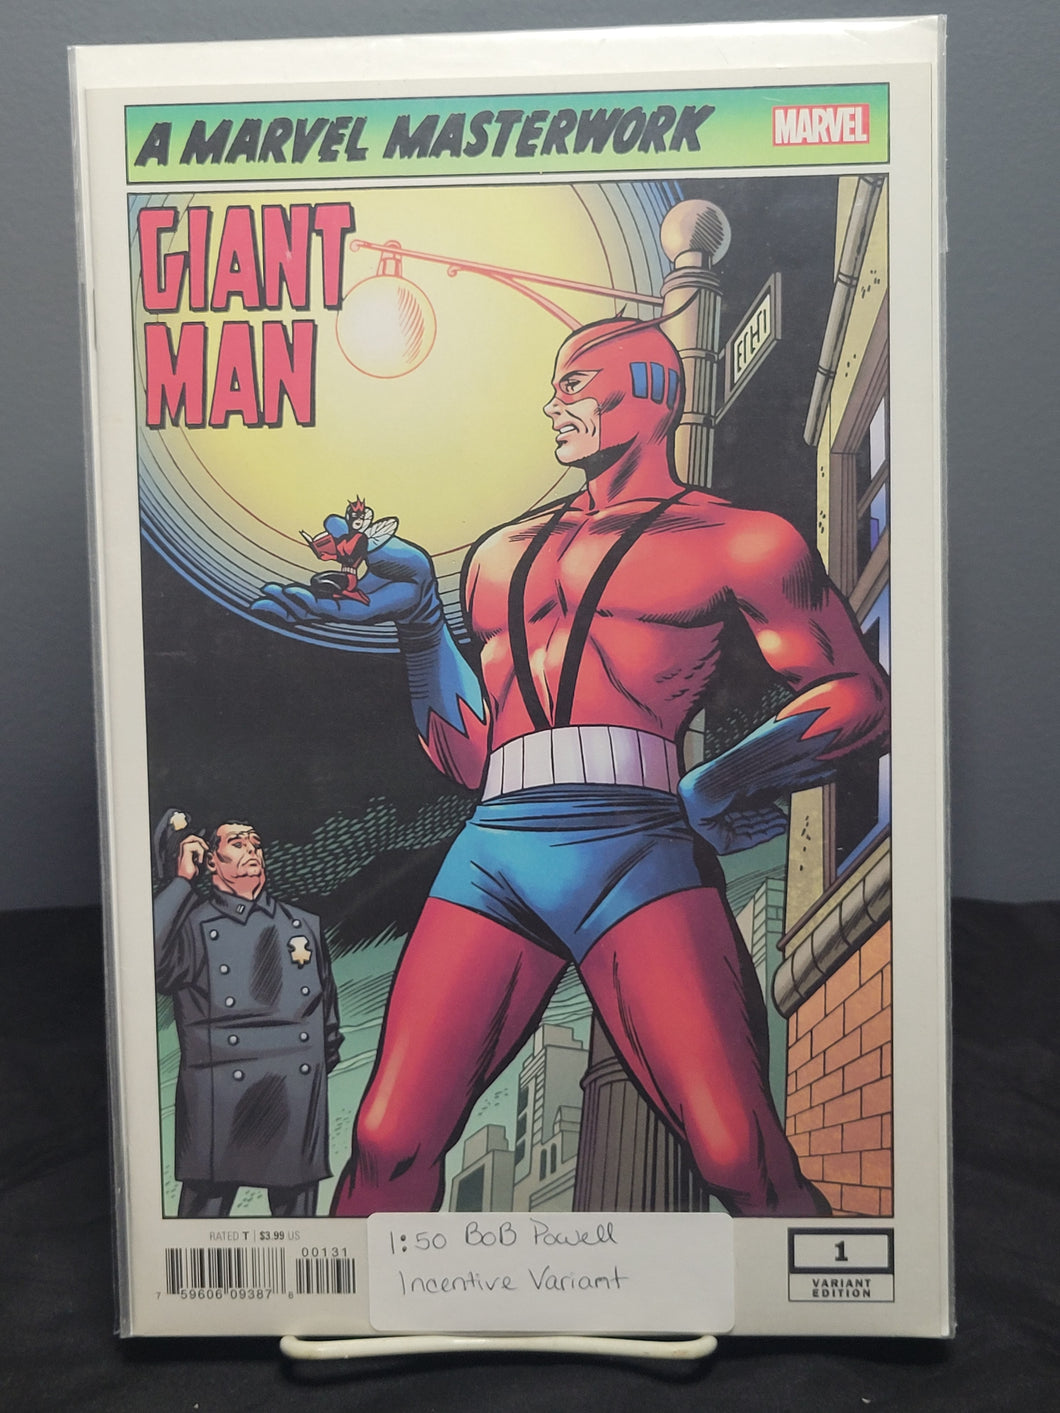 Marvel Masterwork Giant Man #1 1:50 Variant